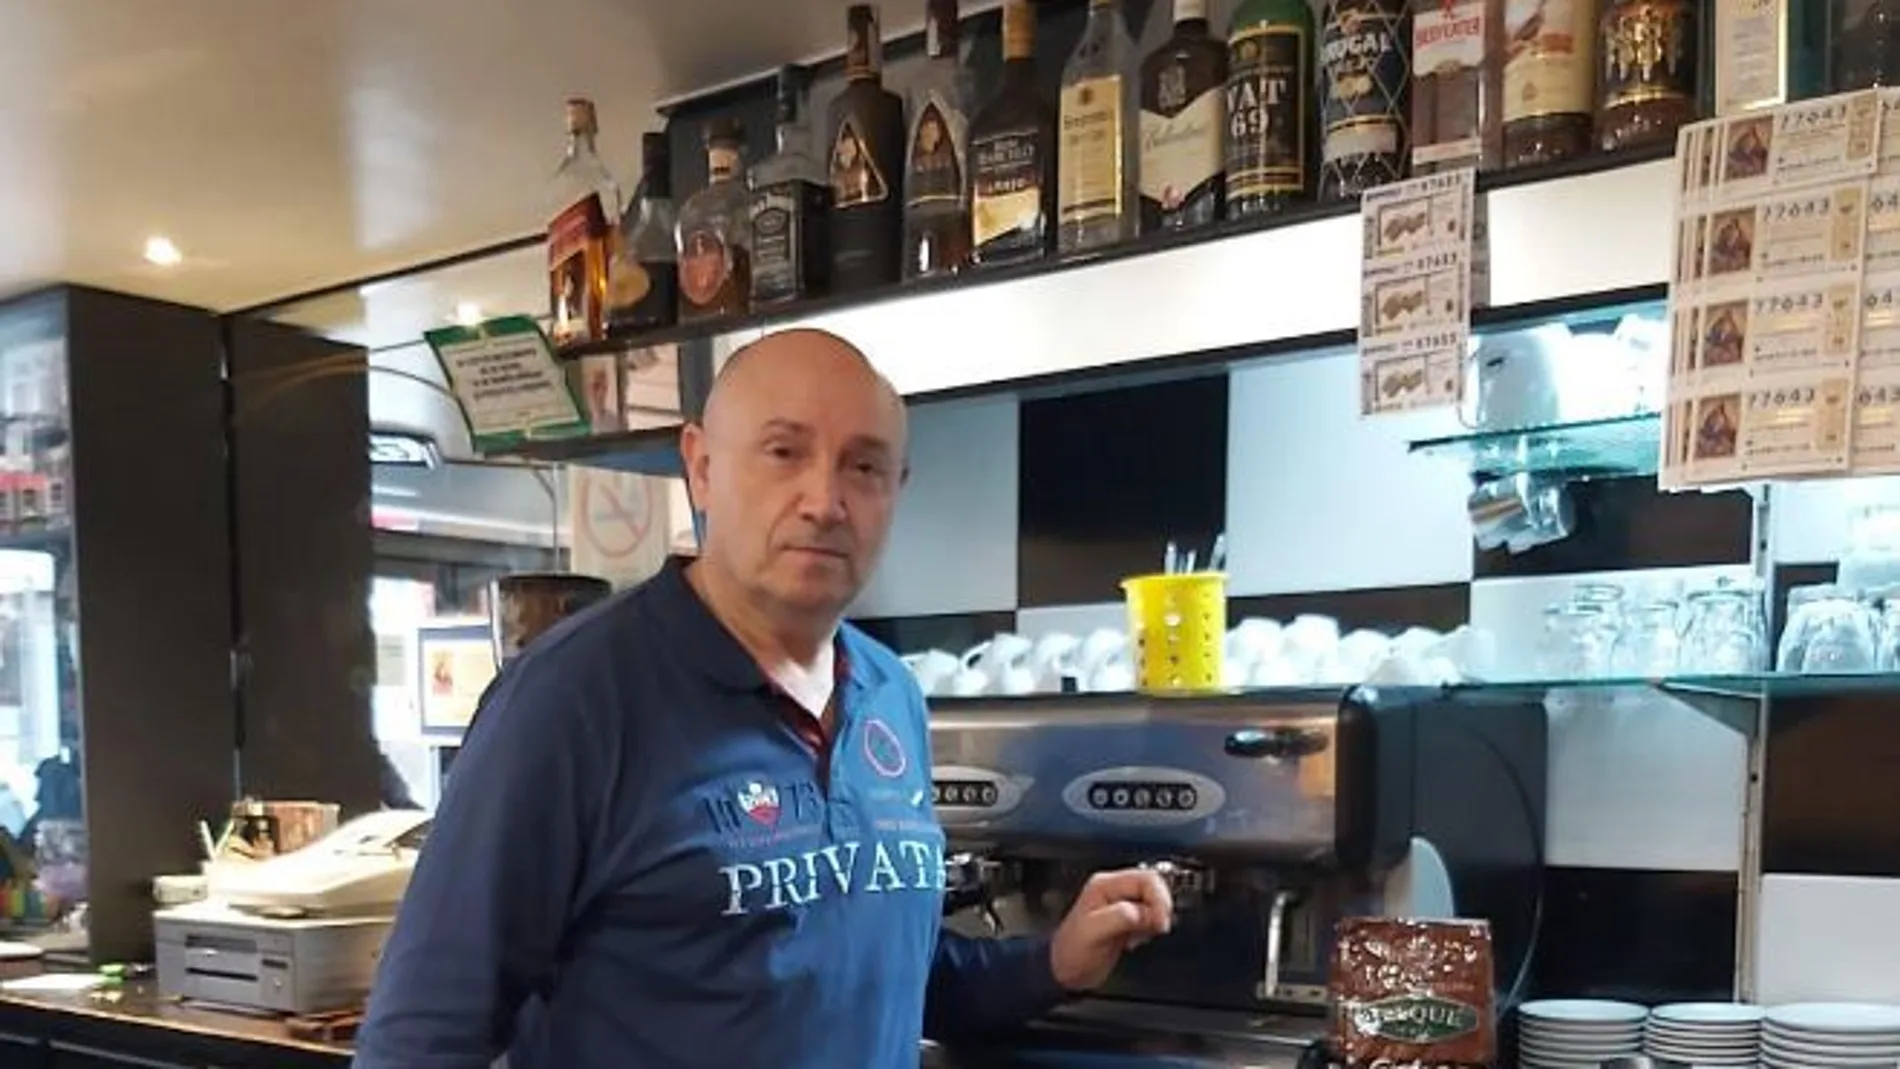 El dueño de la cafetería con café a 1 euro